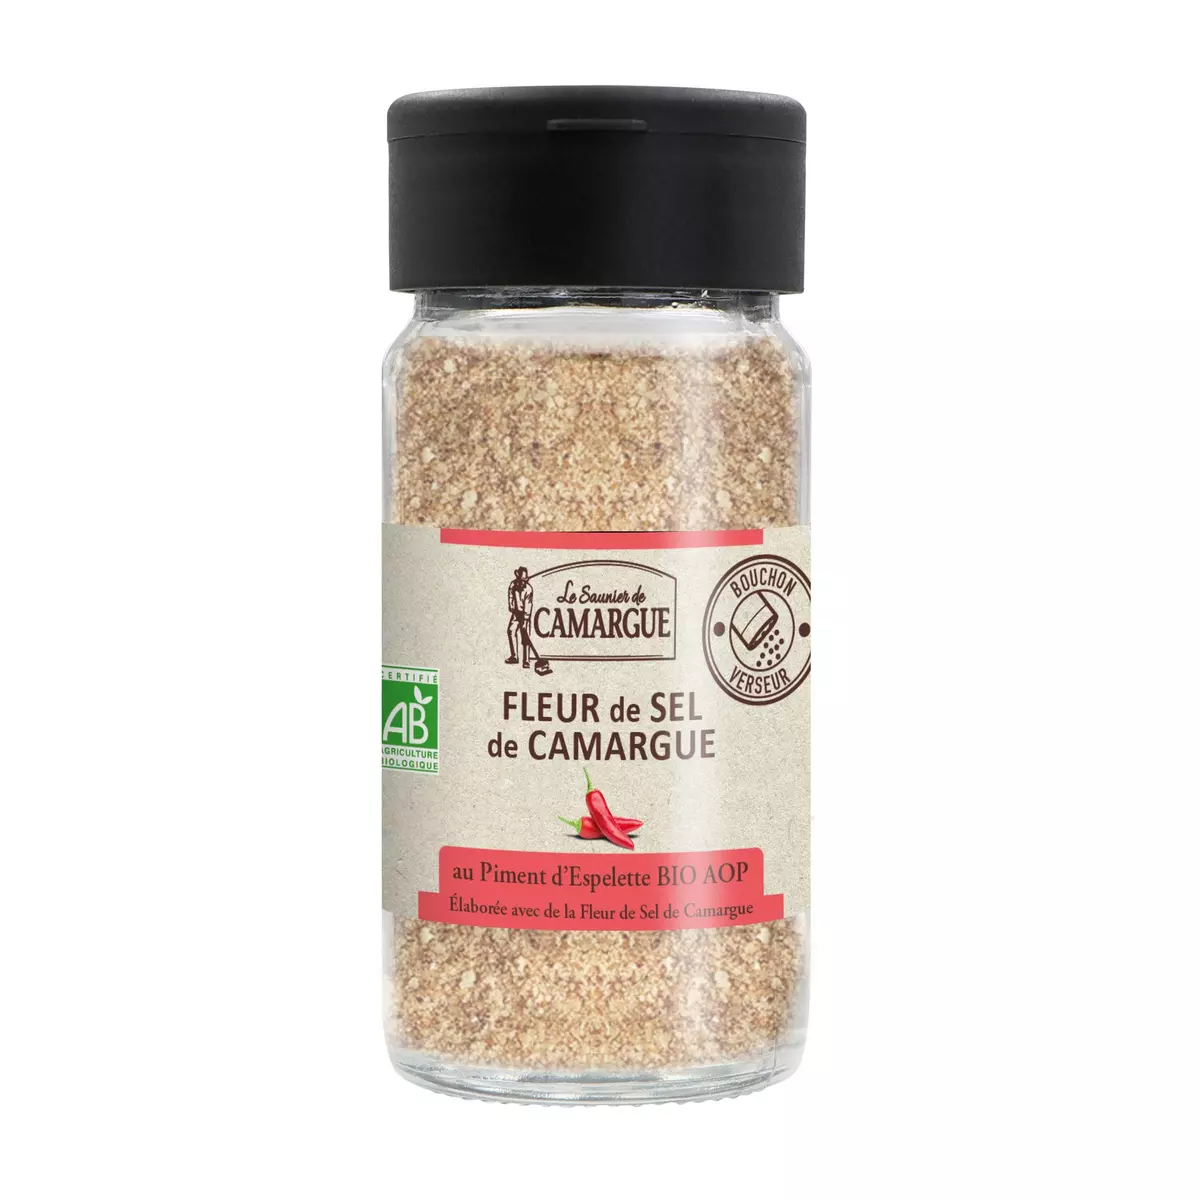 LE SAUNIER DE CAMARGUE Fleur de sel de Camargue au piment d'Espelette bio AOP 80g